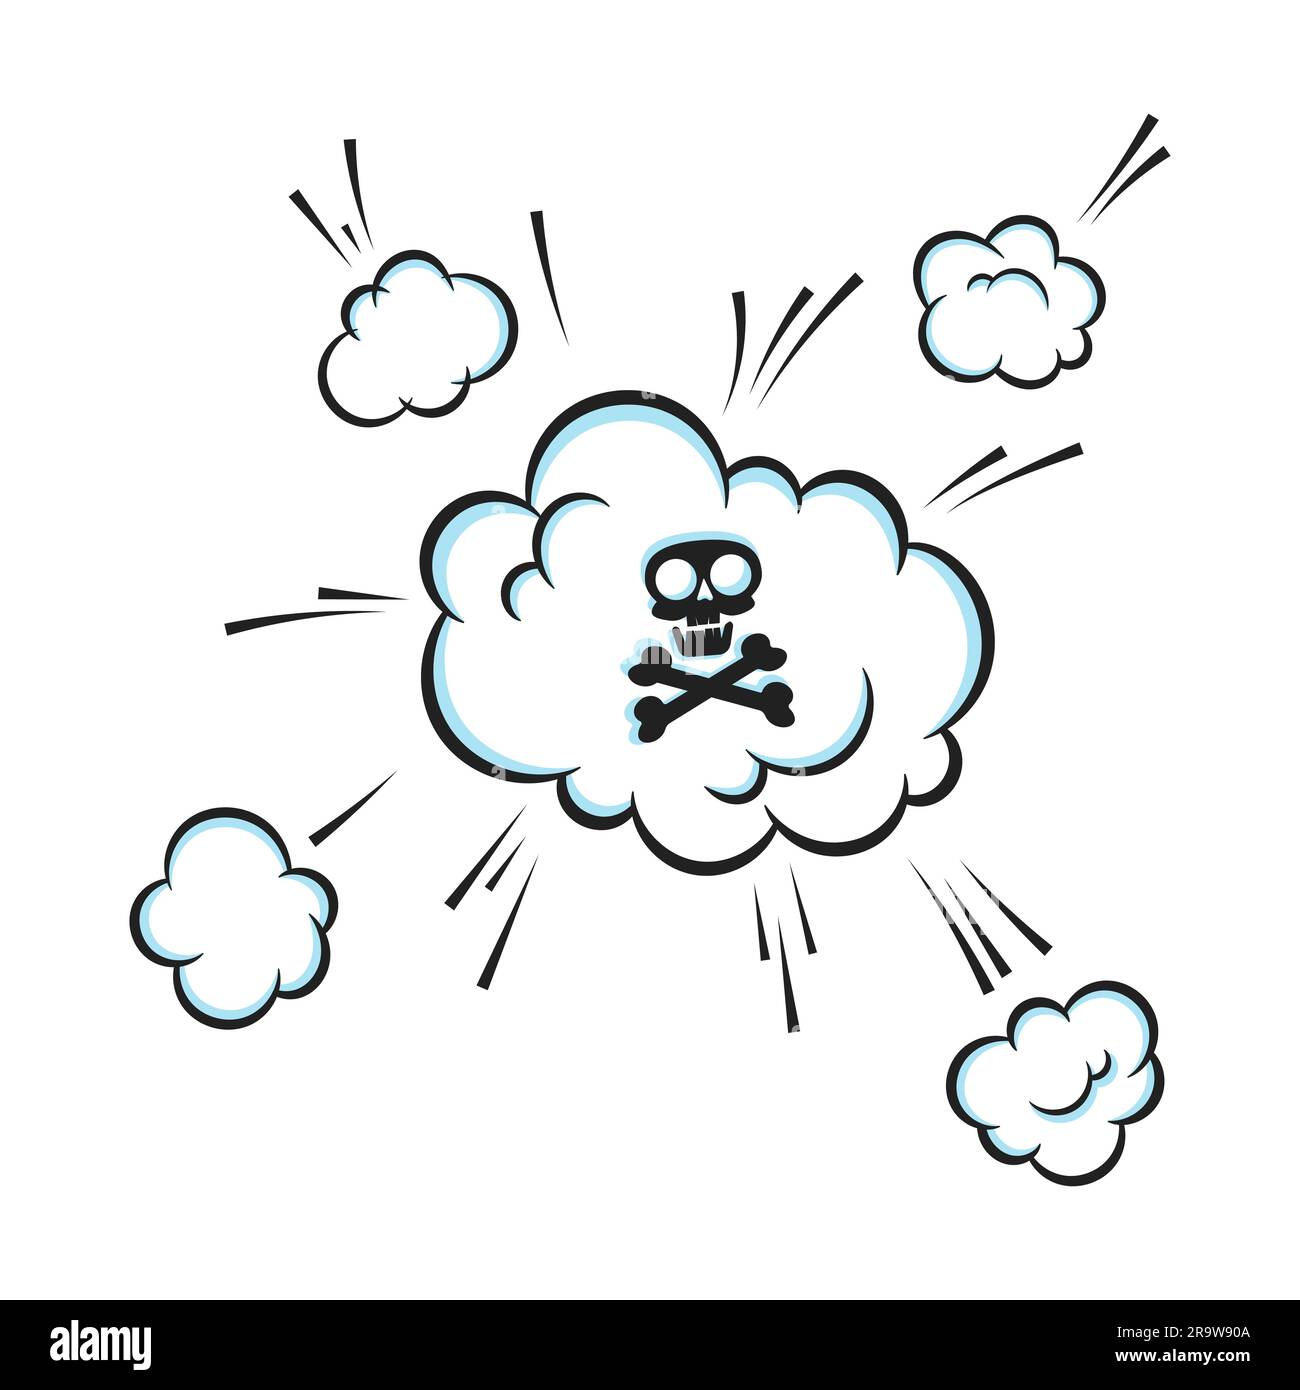 Humo de pedos oliendo nube con cráneo y huesos cruzados pop art cómic libro de dibujos animados estilo plano ilustración vectorial. Mal olor o mal olor a pedo tóxico Ilustración del Vector